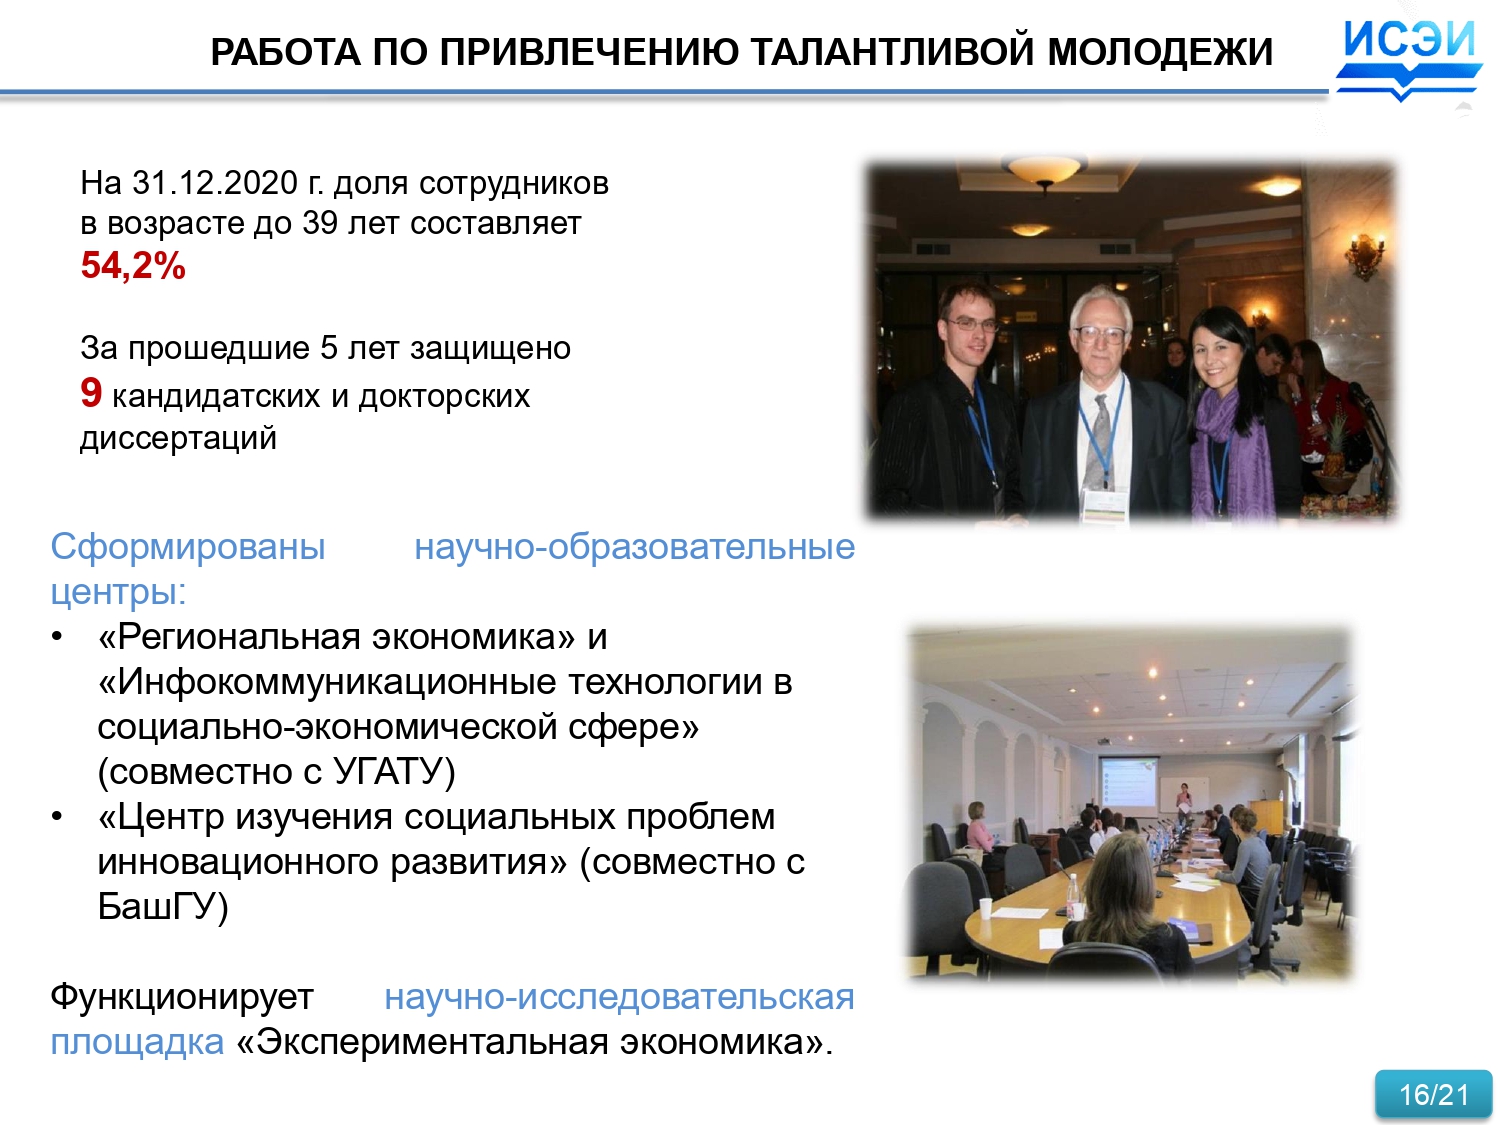 Презентация_Дальний-Восток_2021_page-0016